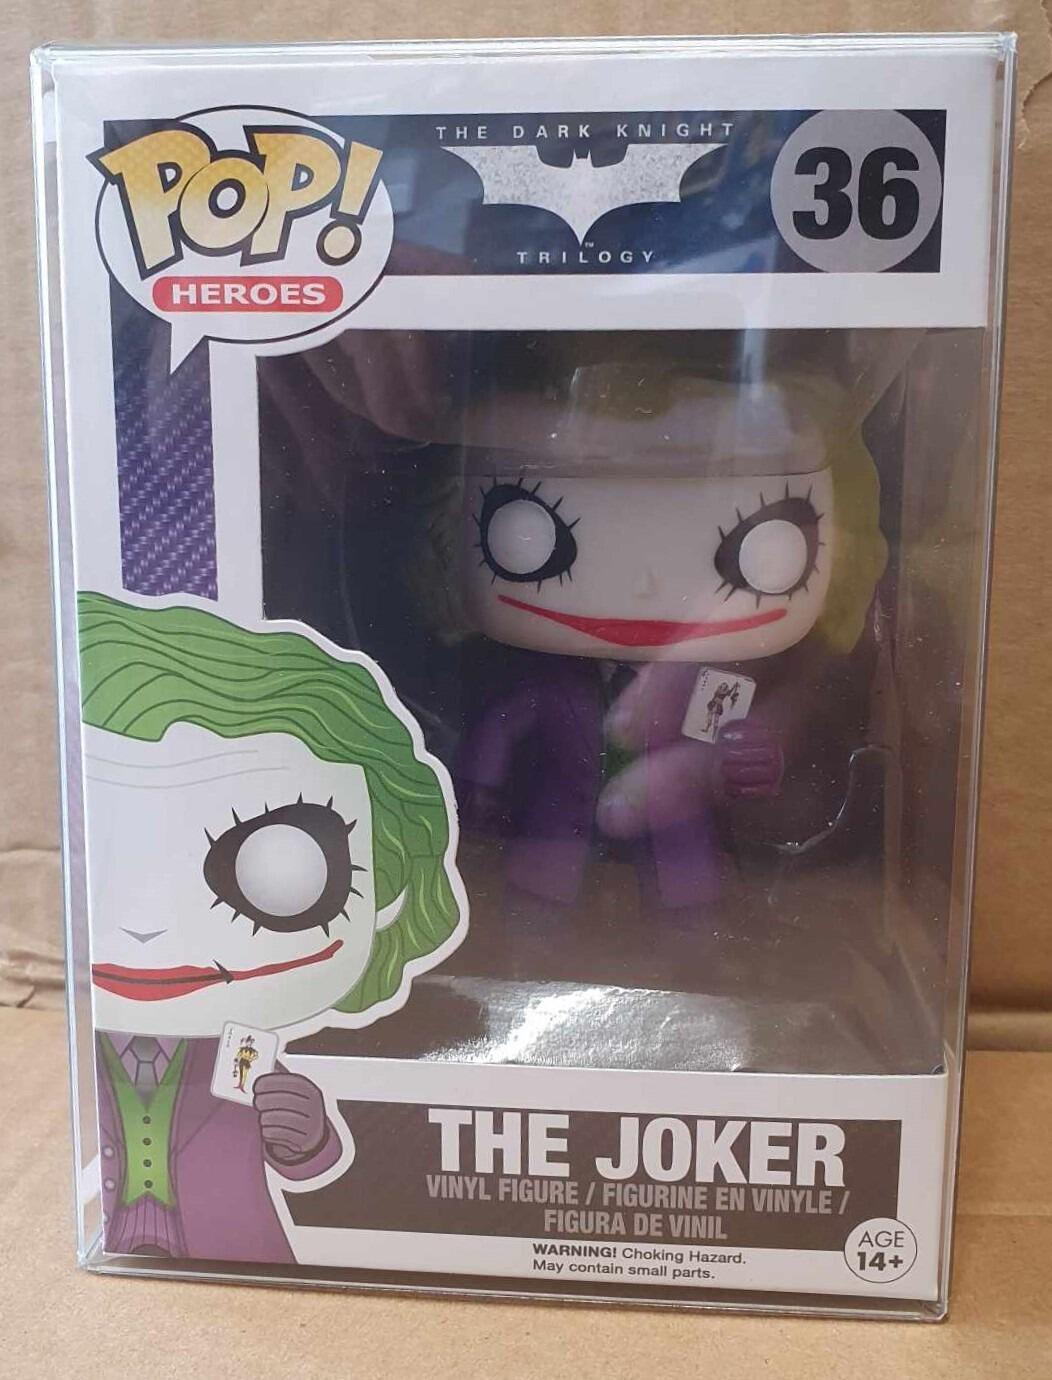 Funko Pop! Heroes The Dark Knight Trilogy The Joker Figure #36